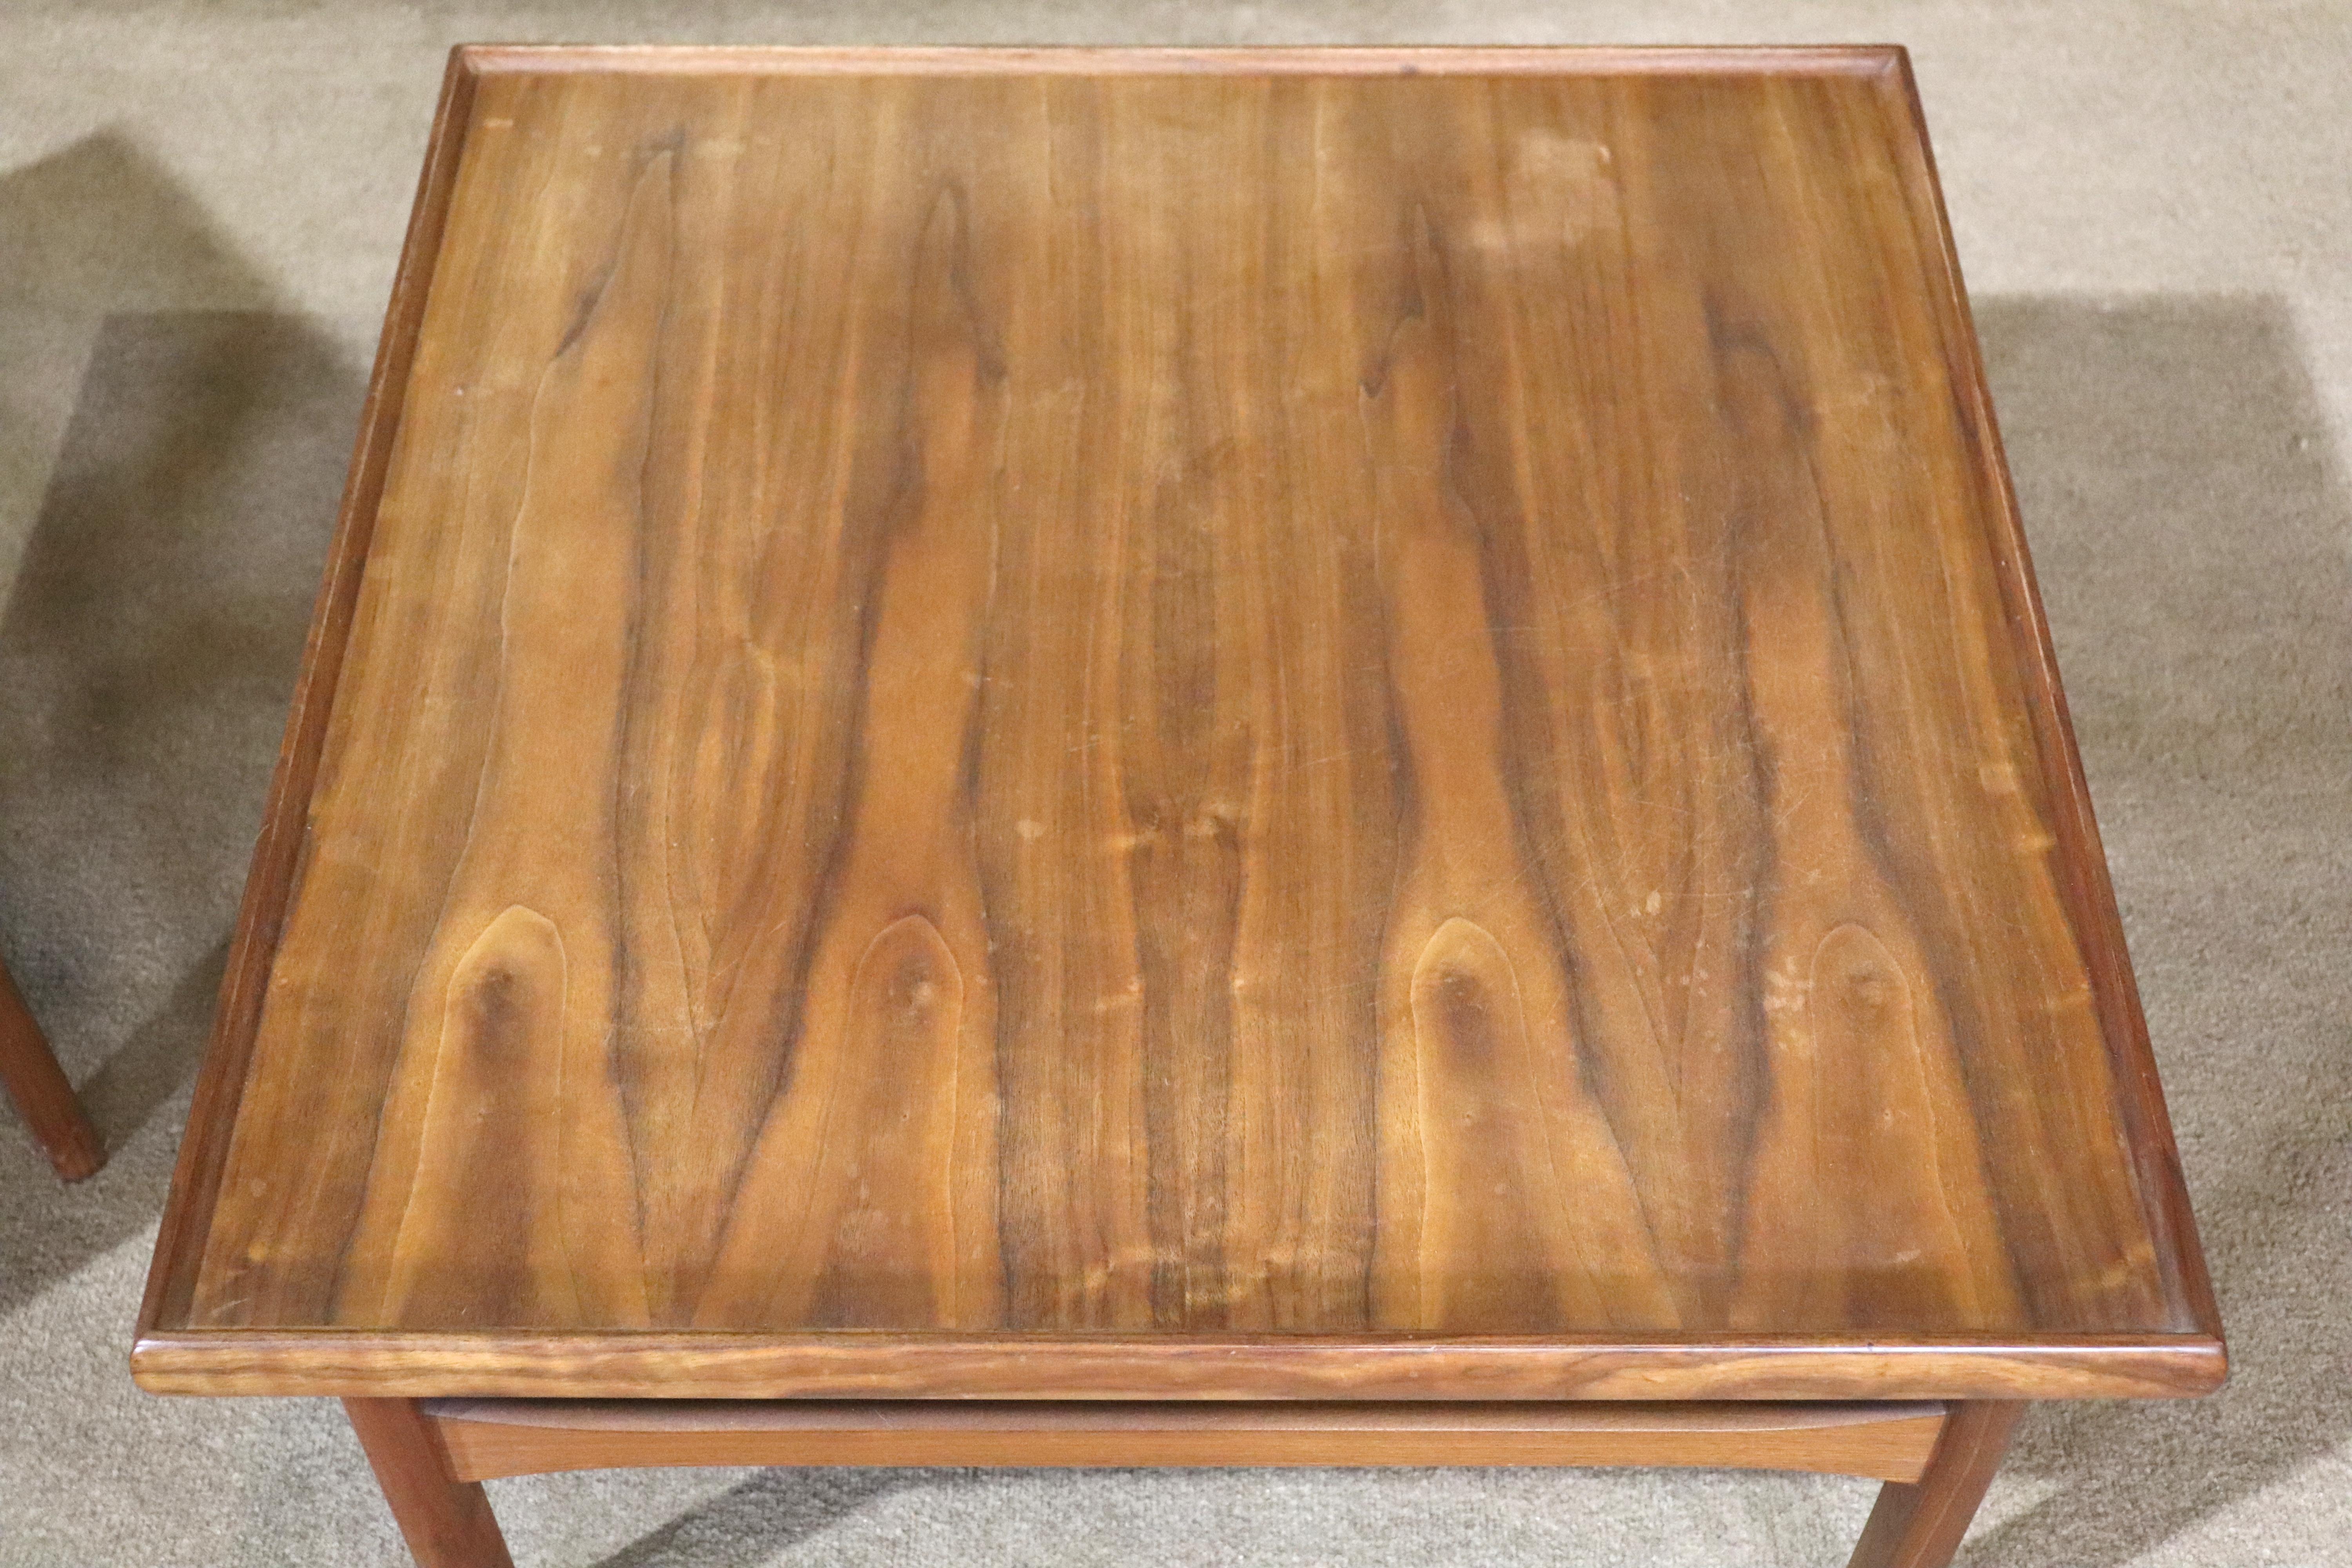 Table carrée en teck par Moreddi. Design/One simple avec des bords tournés et des châssis en bois.
Veuillez confirmer le lieu NY ou NJ